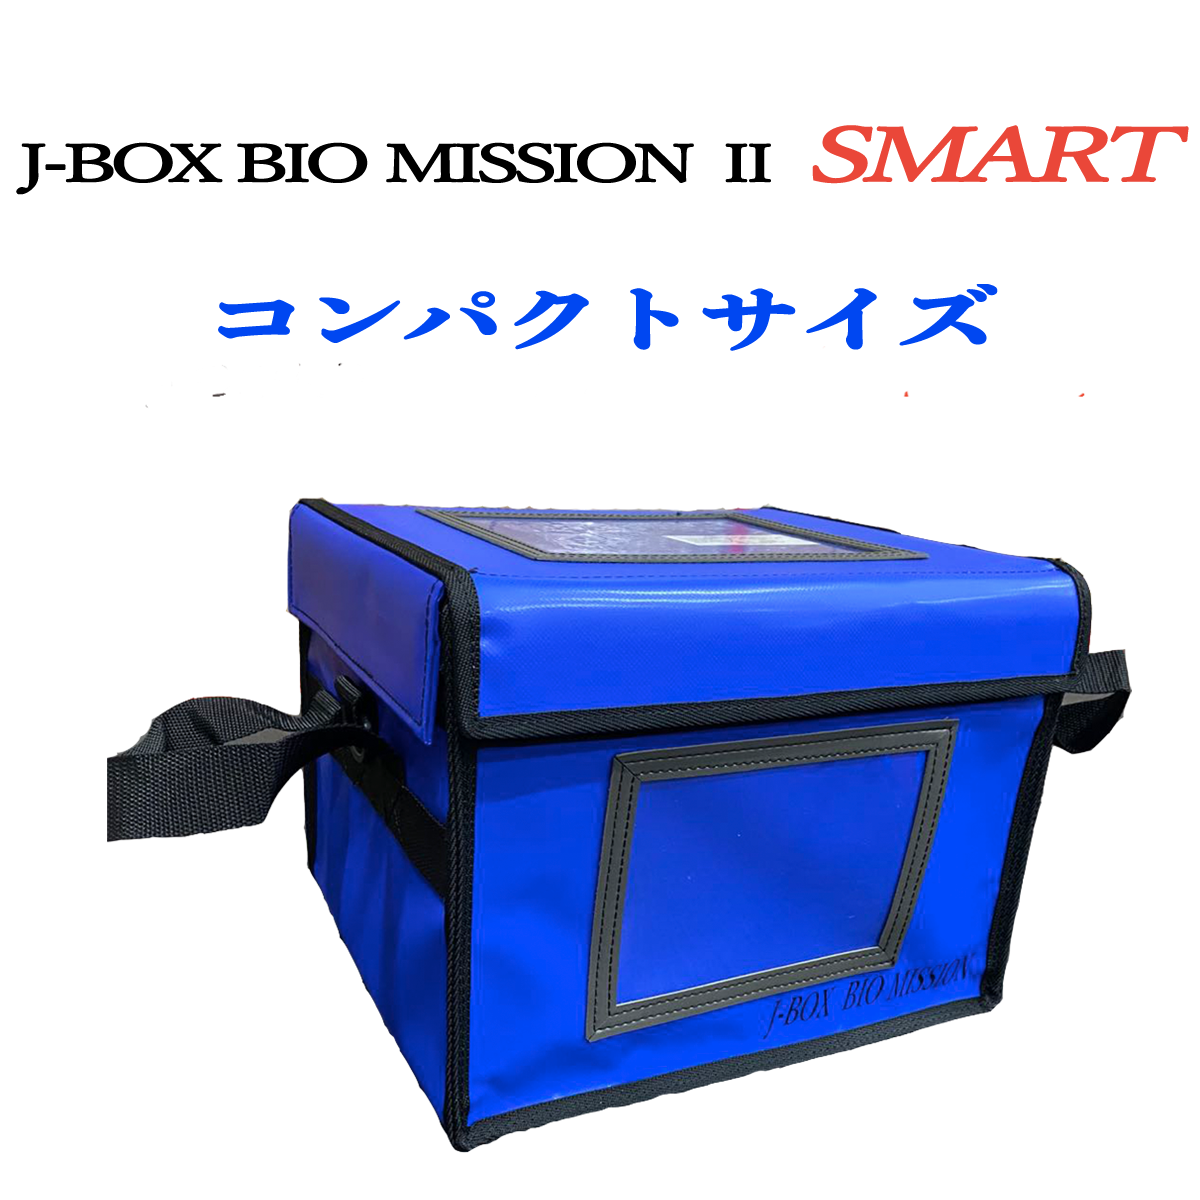 ファイザー・2~8℃対応・コンパクト型】J-BOX BIO MISSION Ⅱ SMART 